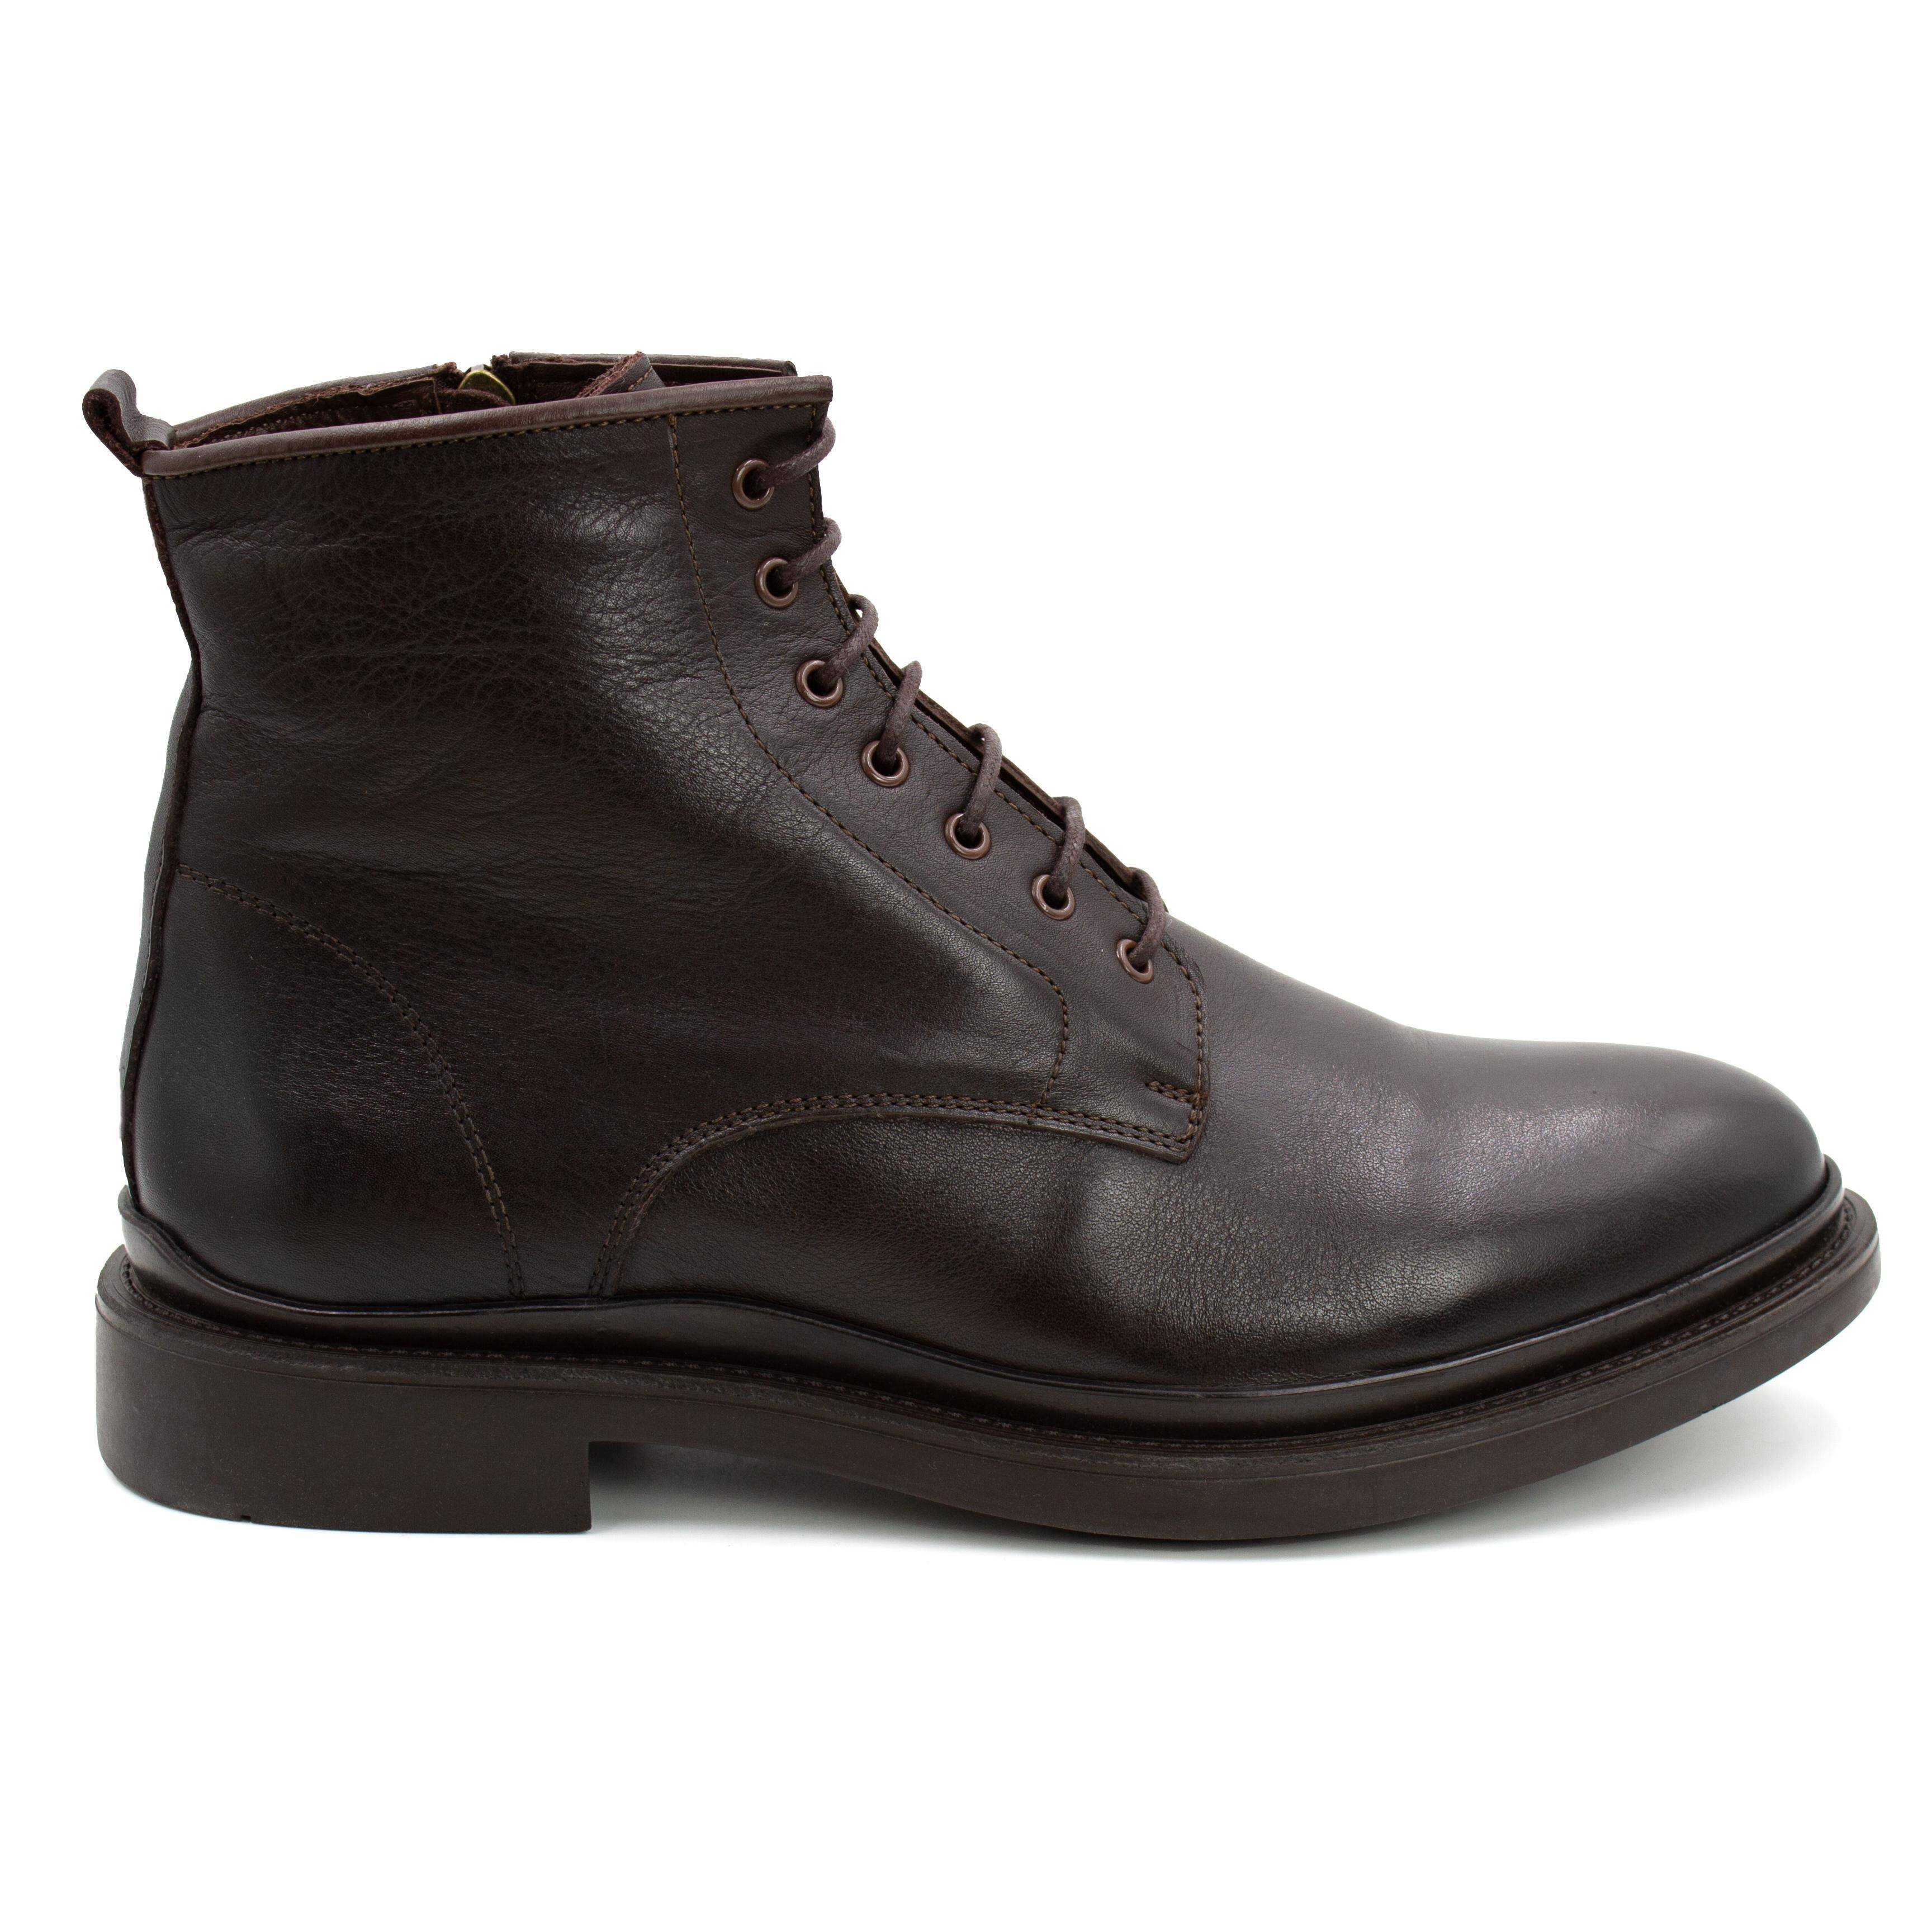 Мужские высокие ботинки Clarks (22203039-4610699), коричневые, цвет коричневый, размер 44 - фото 2